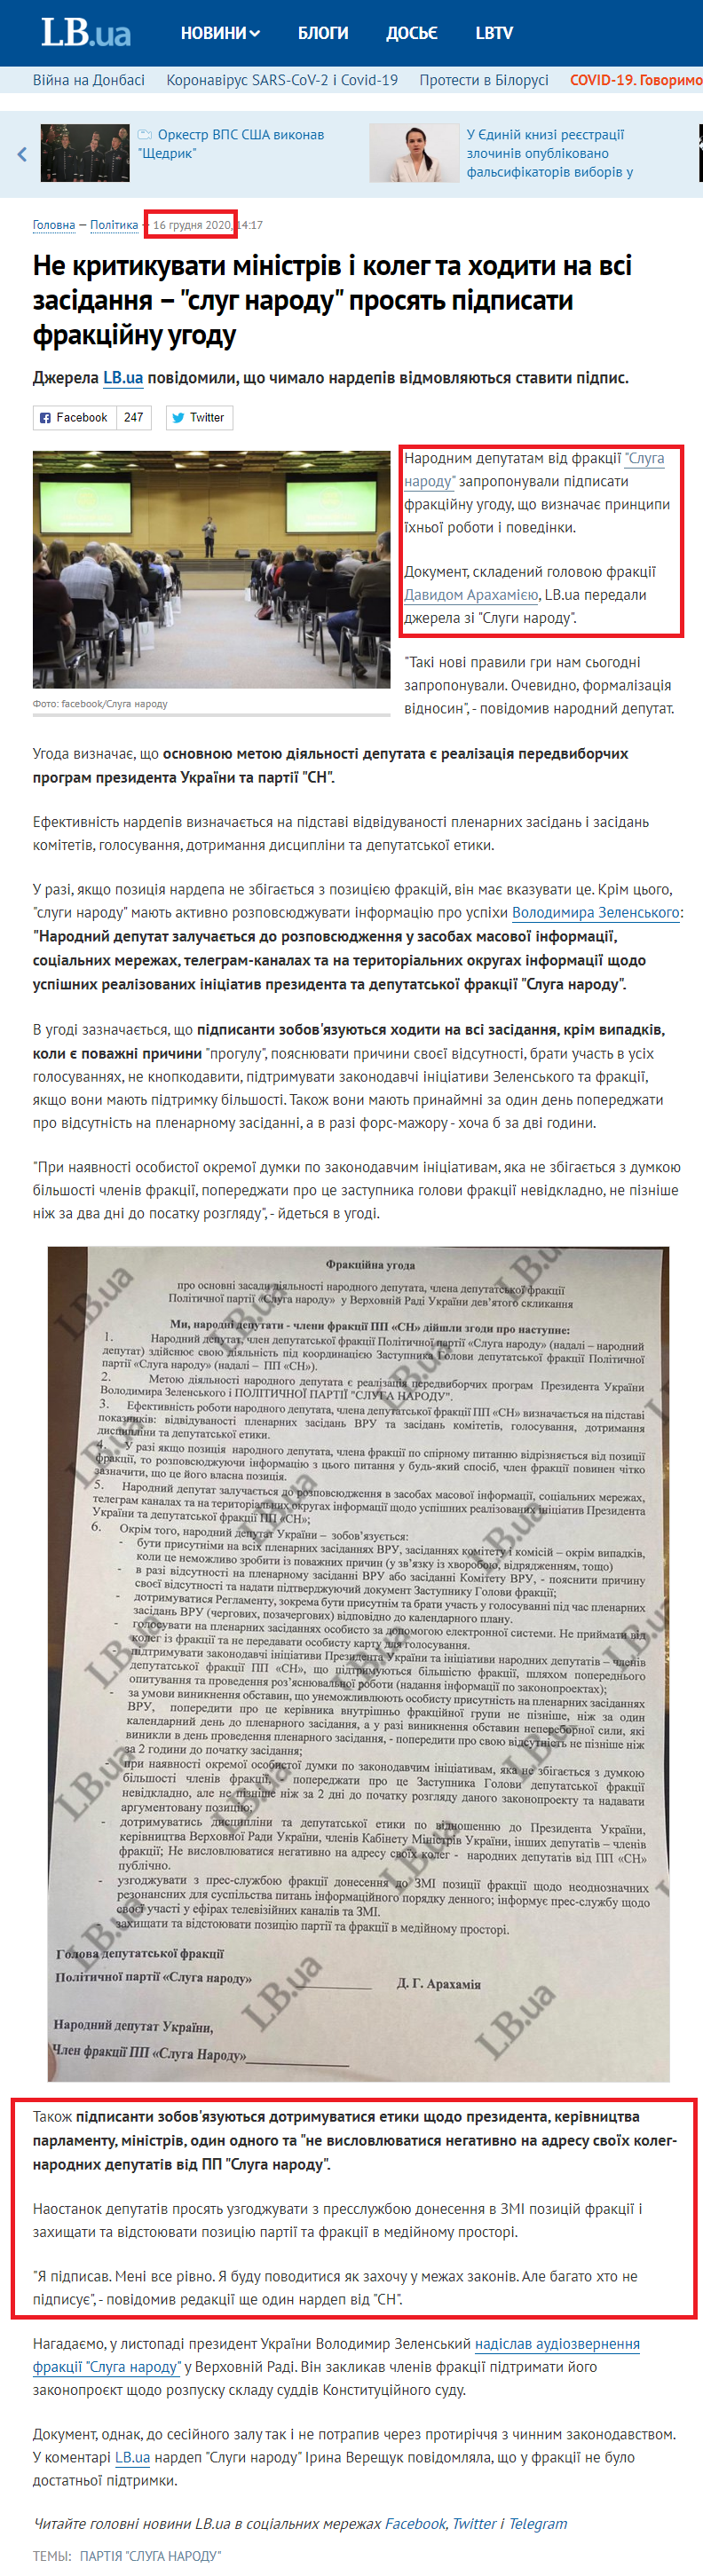 https://lb.ua/news/2020/12/16/473189_kritikuvati_ministriv_i_koleg.html